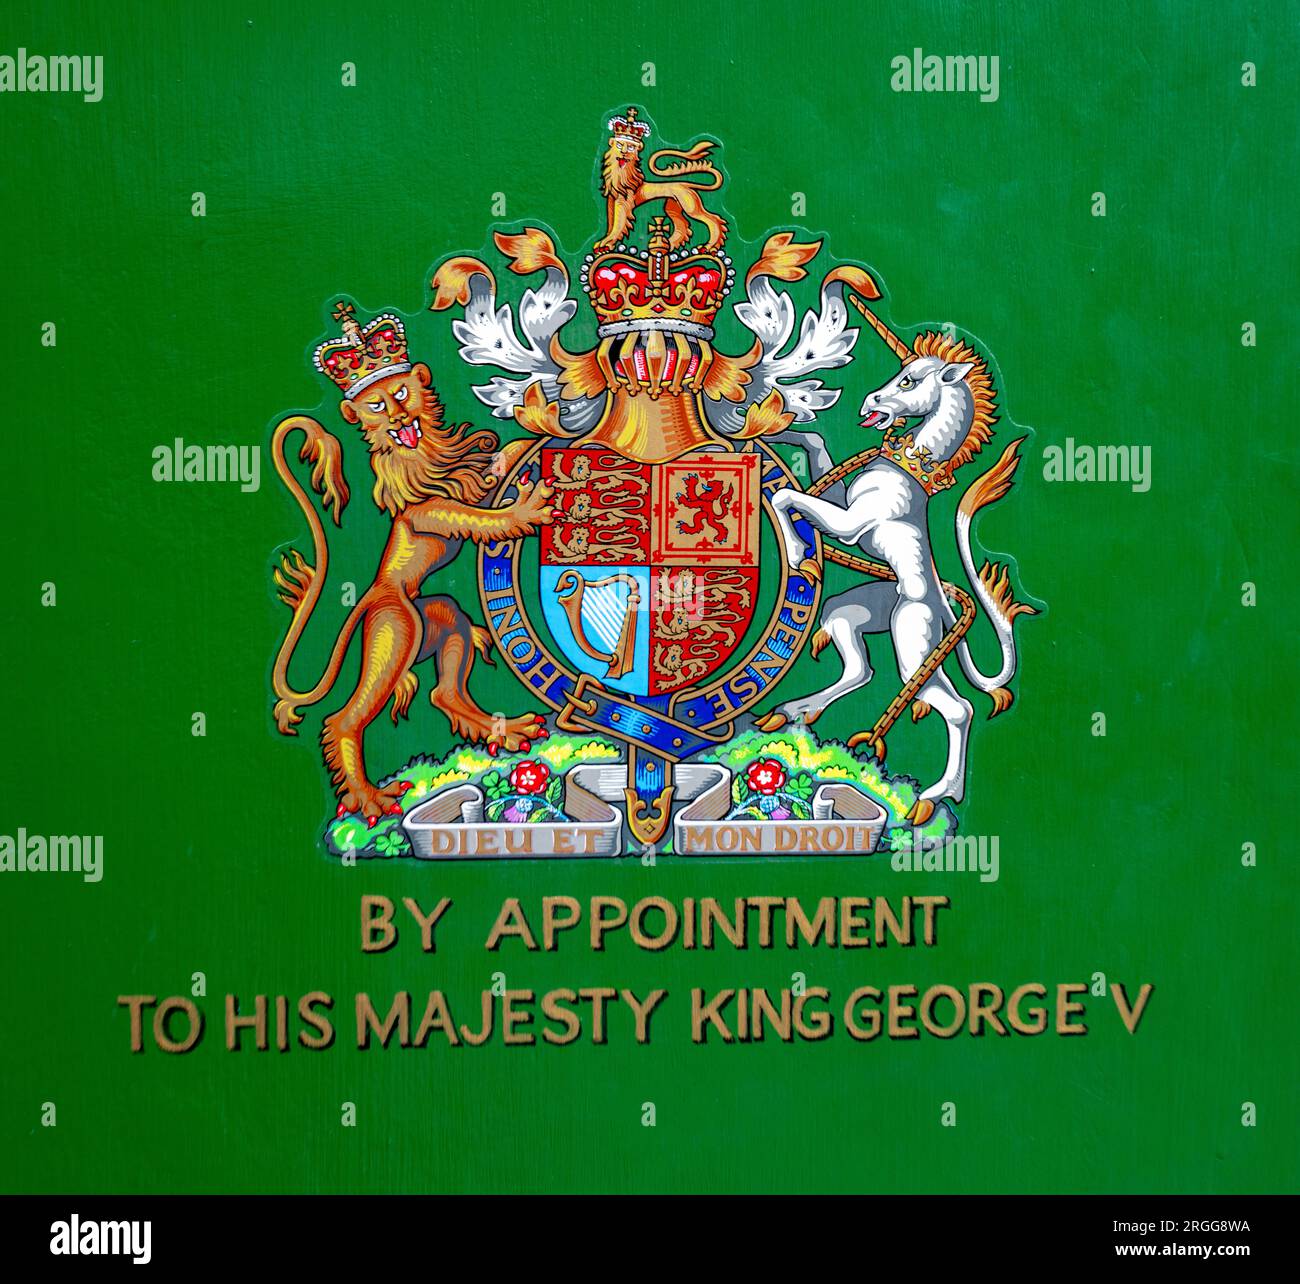 Sur rendez-vous à Sa Majesté le Roi George V Banque D'Images